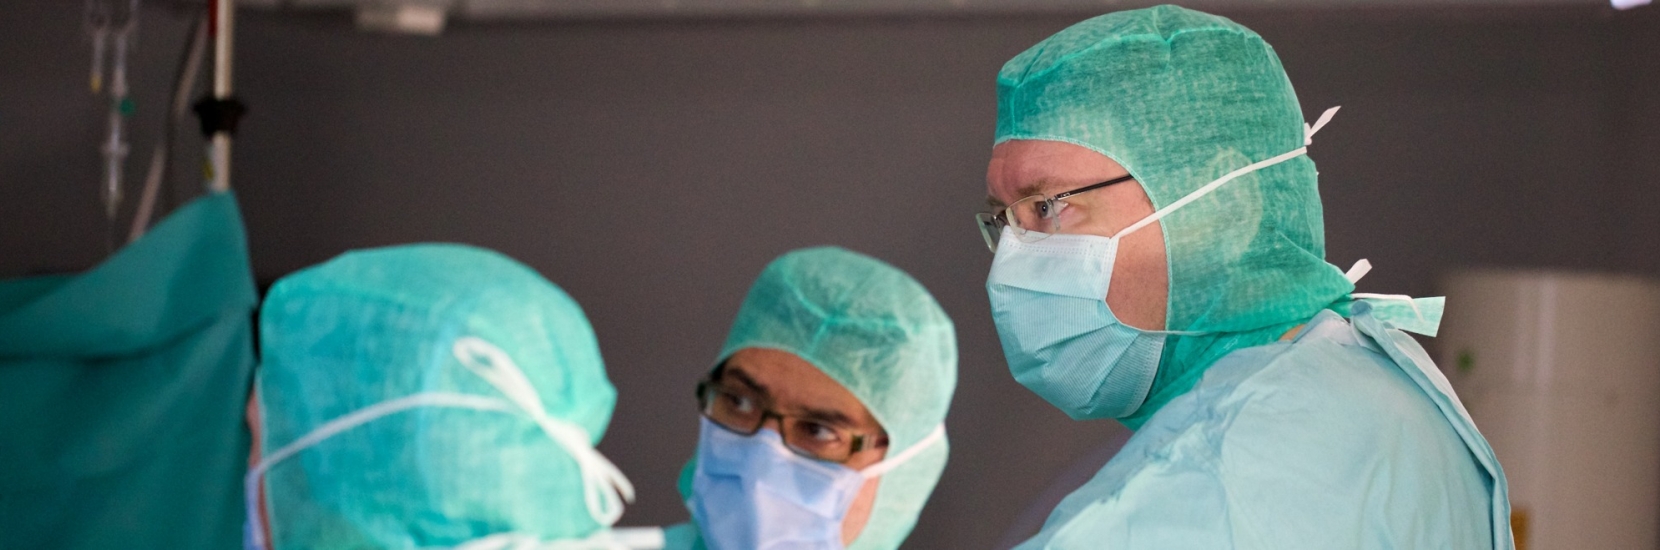 Le Prof. Dr Romain Seil, chirurgien orthopédiste au CHL, nommé président de la société européenne ESSKA